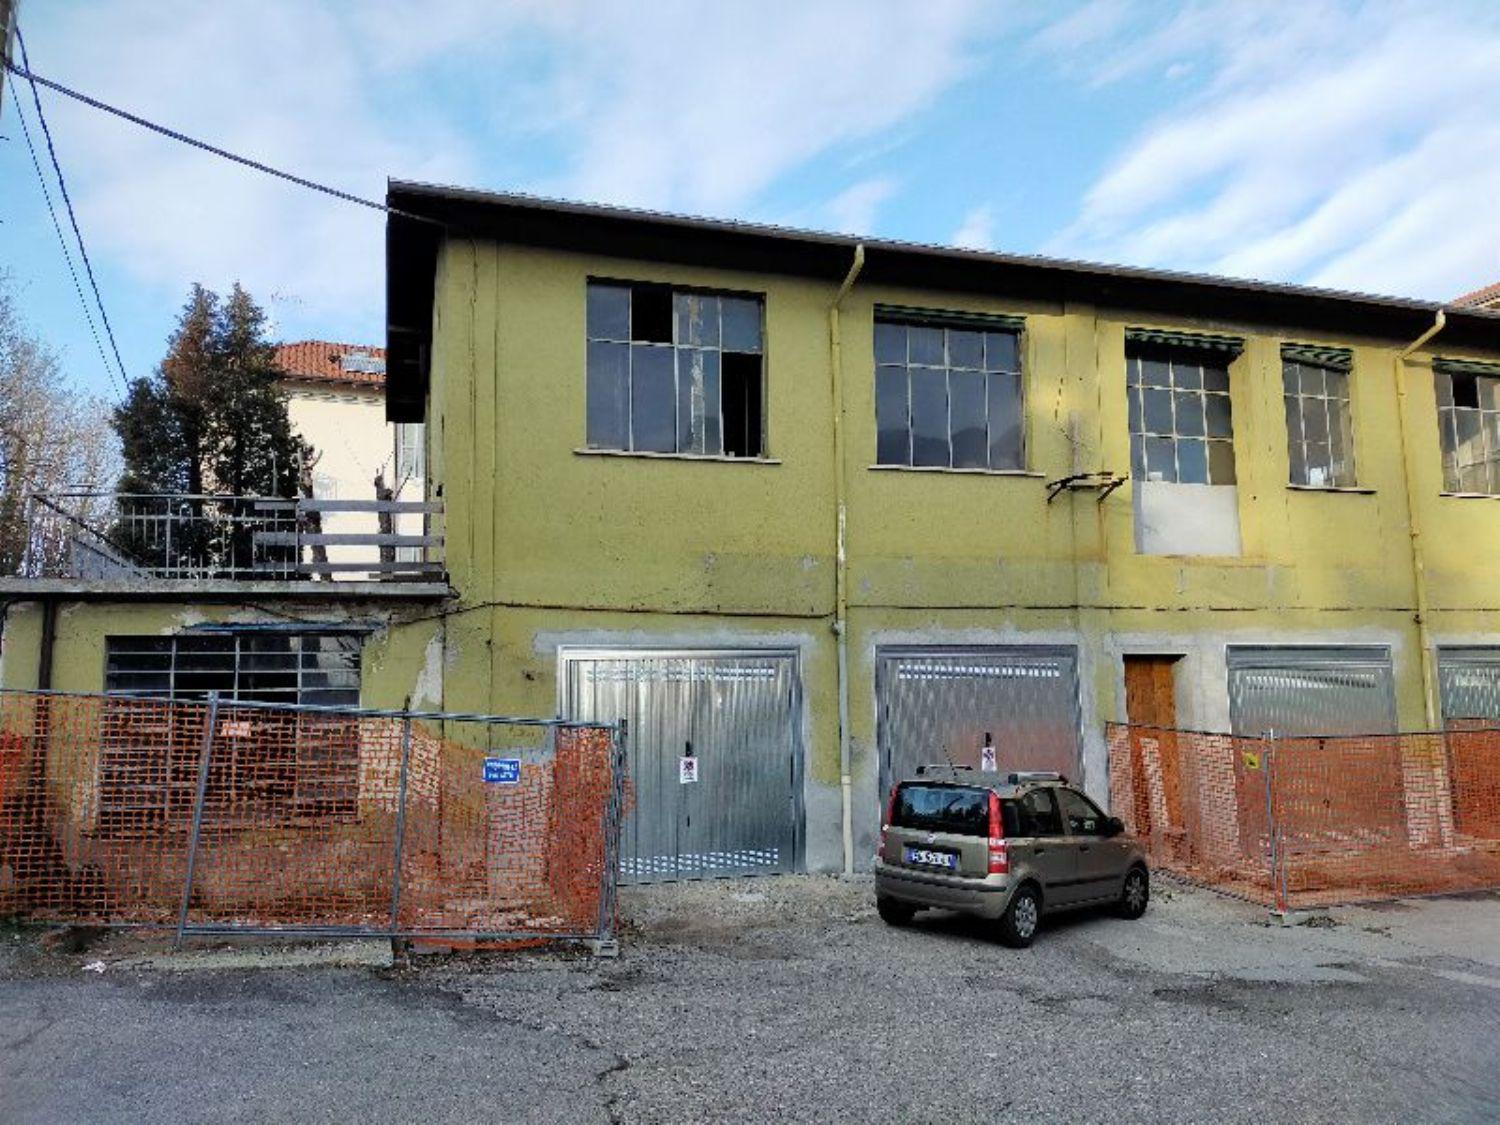 Rustico / Casale in vendita a Albizzate, 1 locali, prezzo € 65.000 | PortaleAgenzieImmobiliari.it